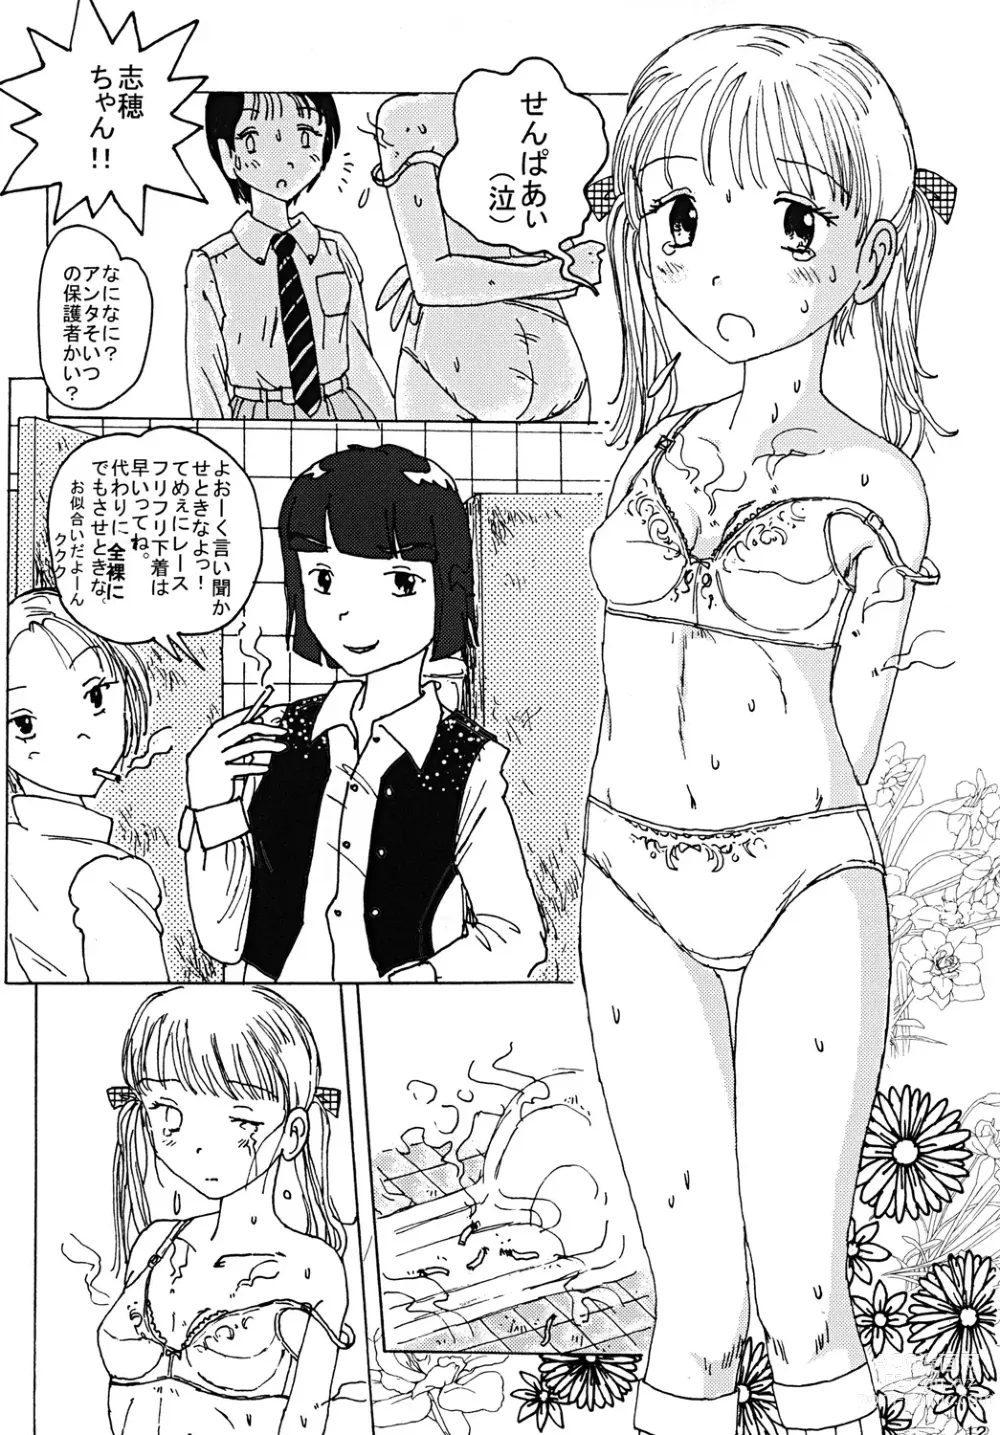 Page 11 of doujinshi Mune Ippai no Dizzy